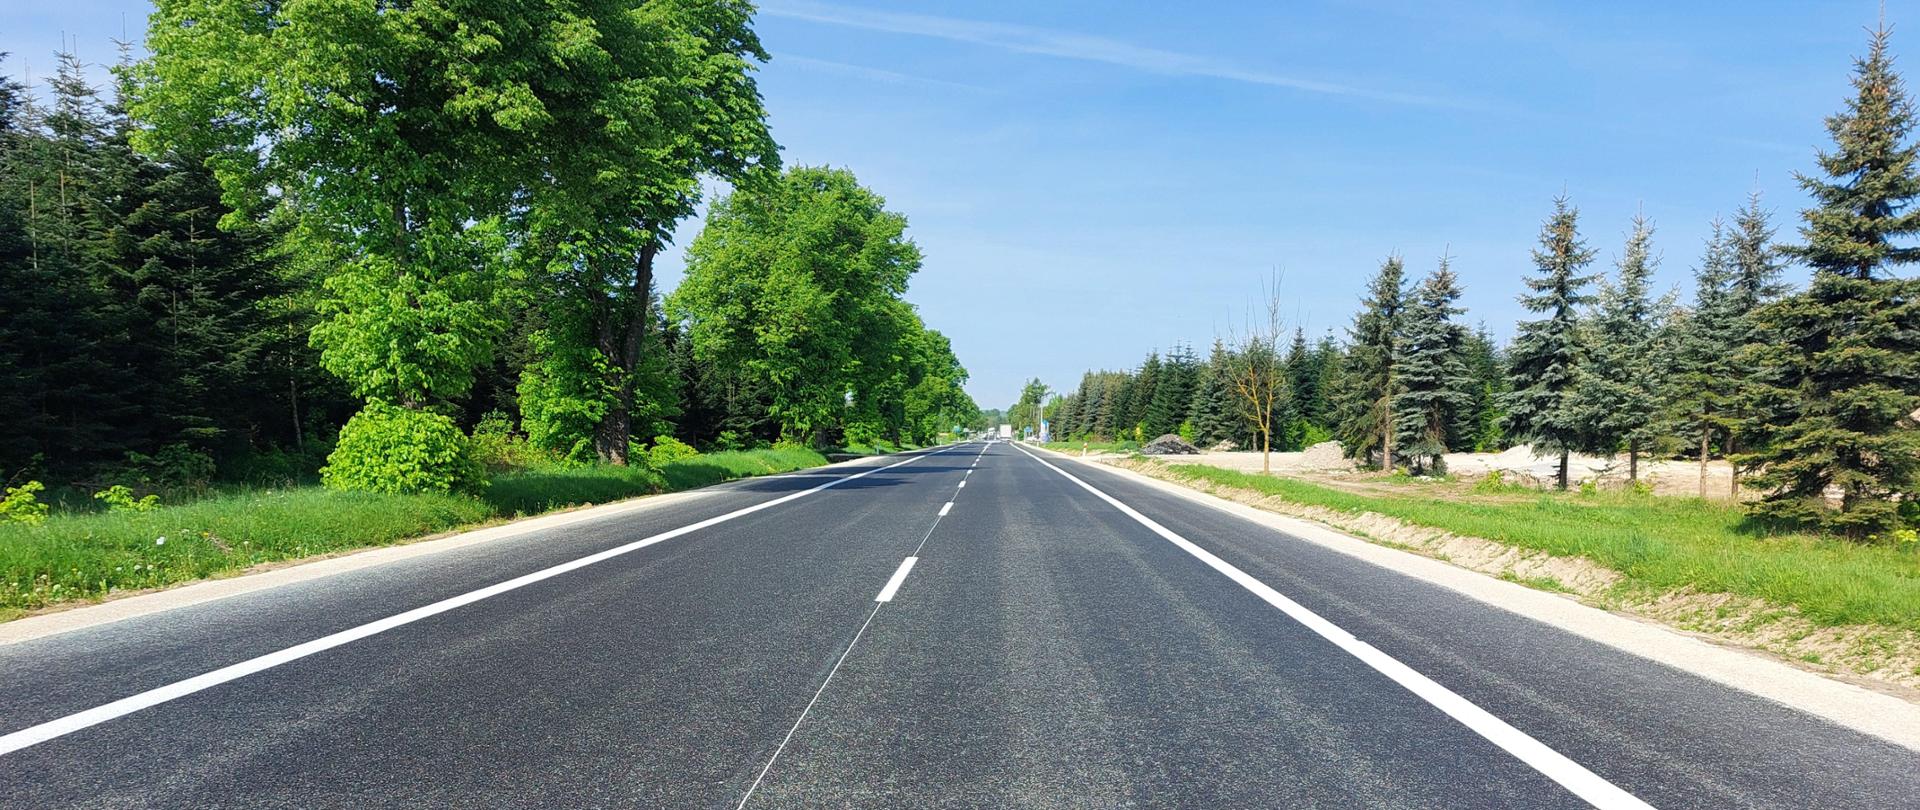 DK73 Szczeglin - Pacanów - droga asfaltowa jednojezdniowa z oznakowaniem poziomym. Białe linie krawędziowe ciągłe, w osi drogi przerywane. Przy drodze zielone drzewa 